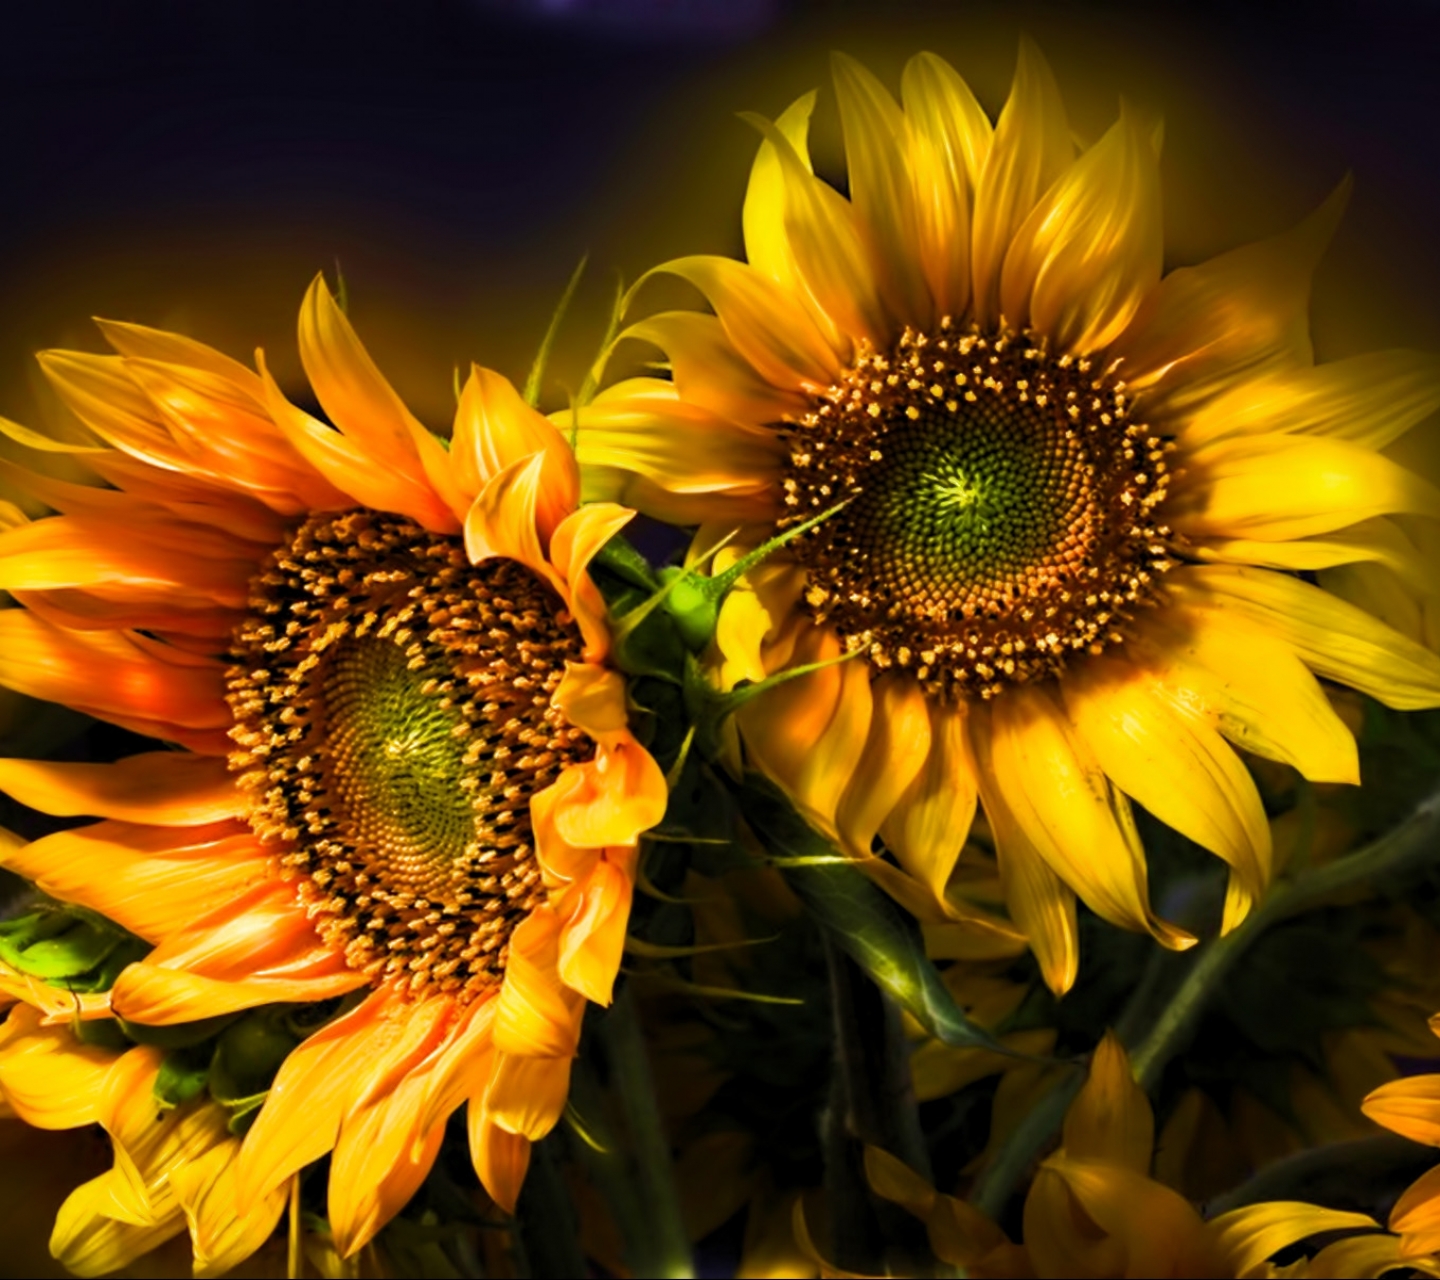 Descarga gratuita de fondo de pantalla para móvil de Flores, Girasol, Tierra/naturaleza.